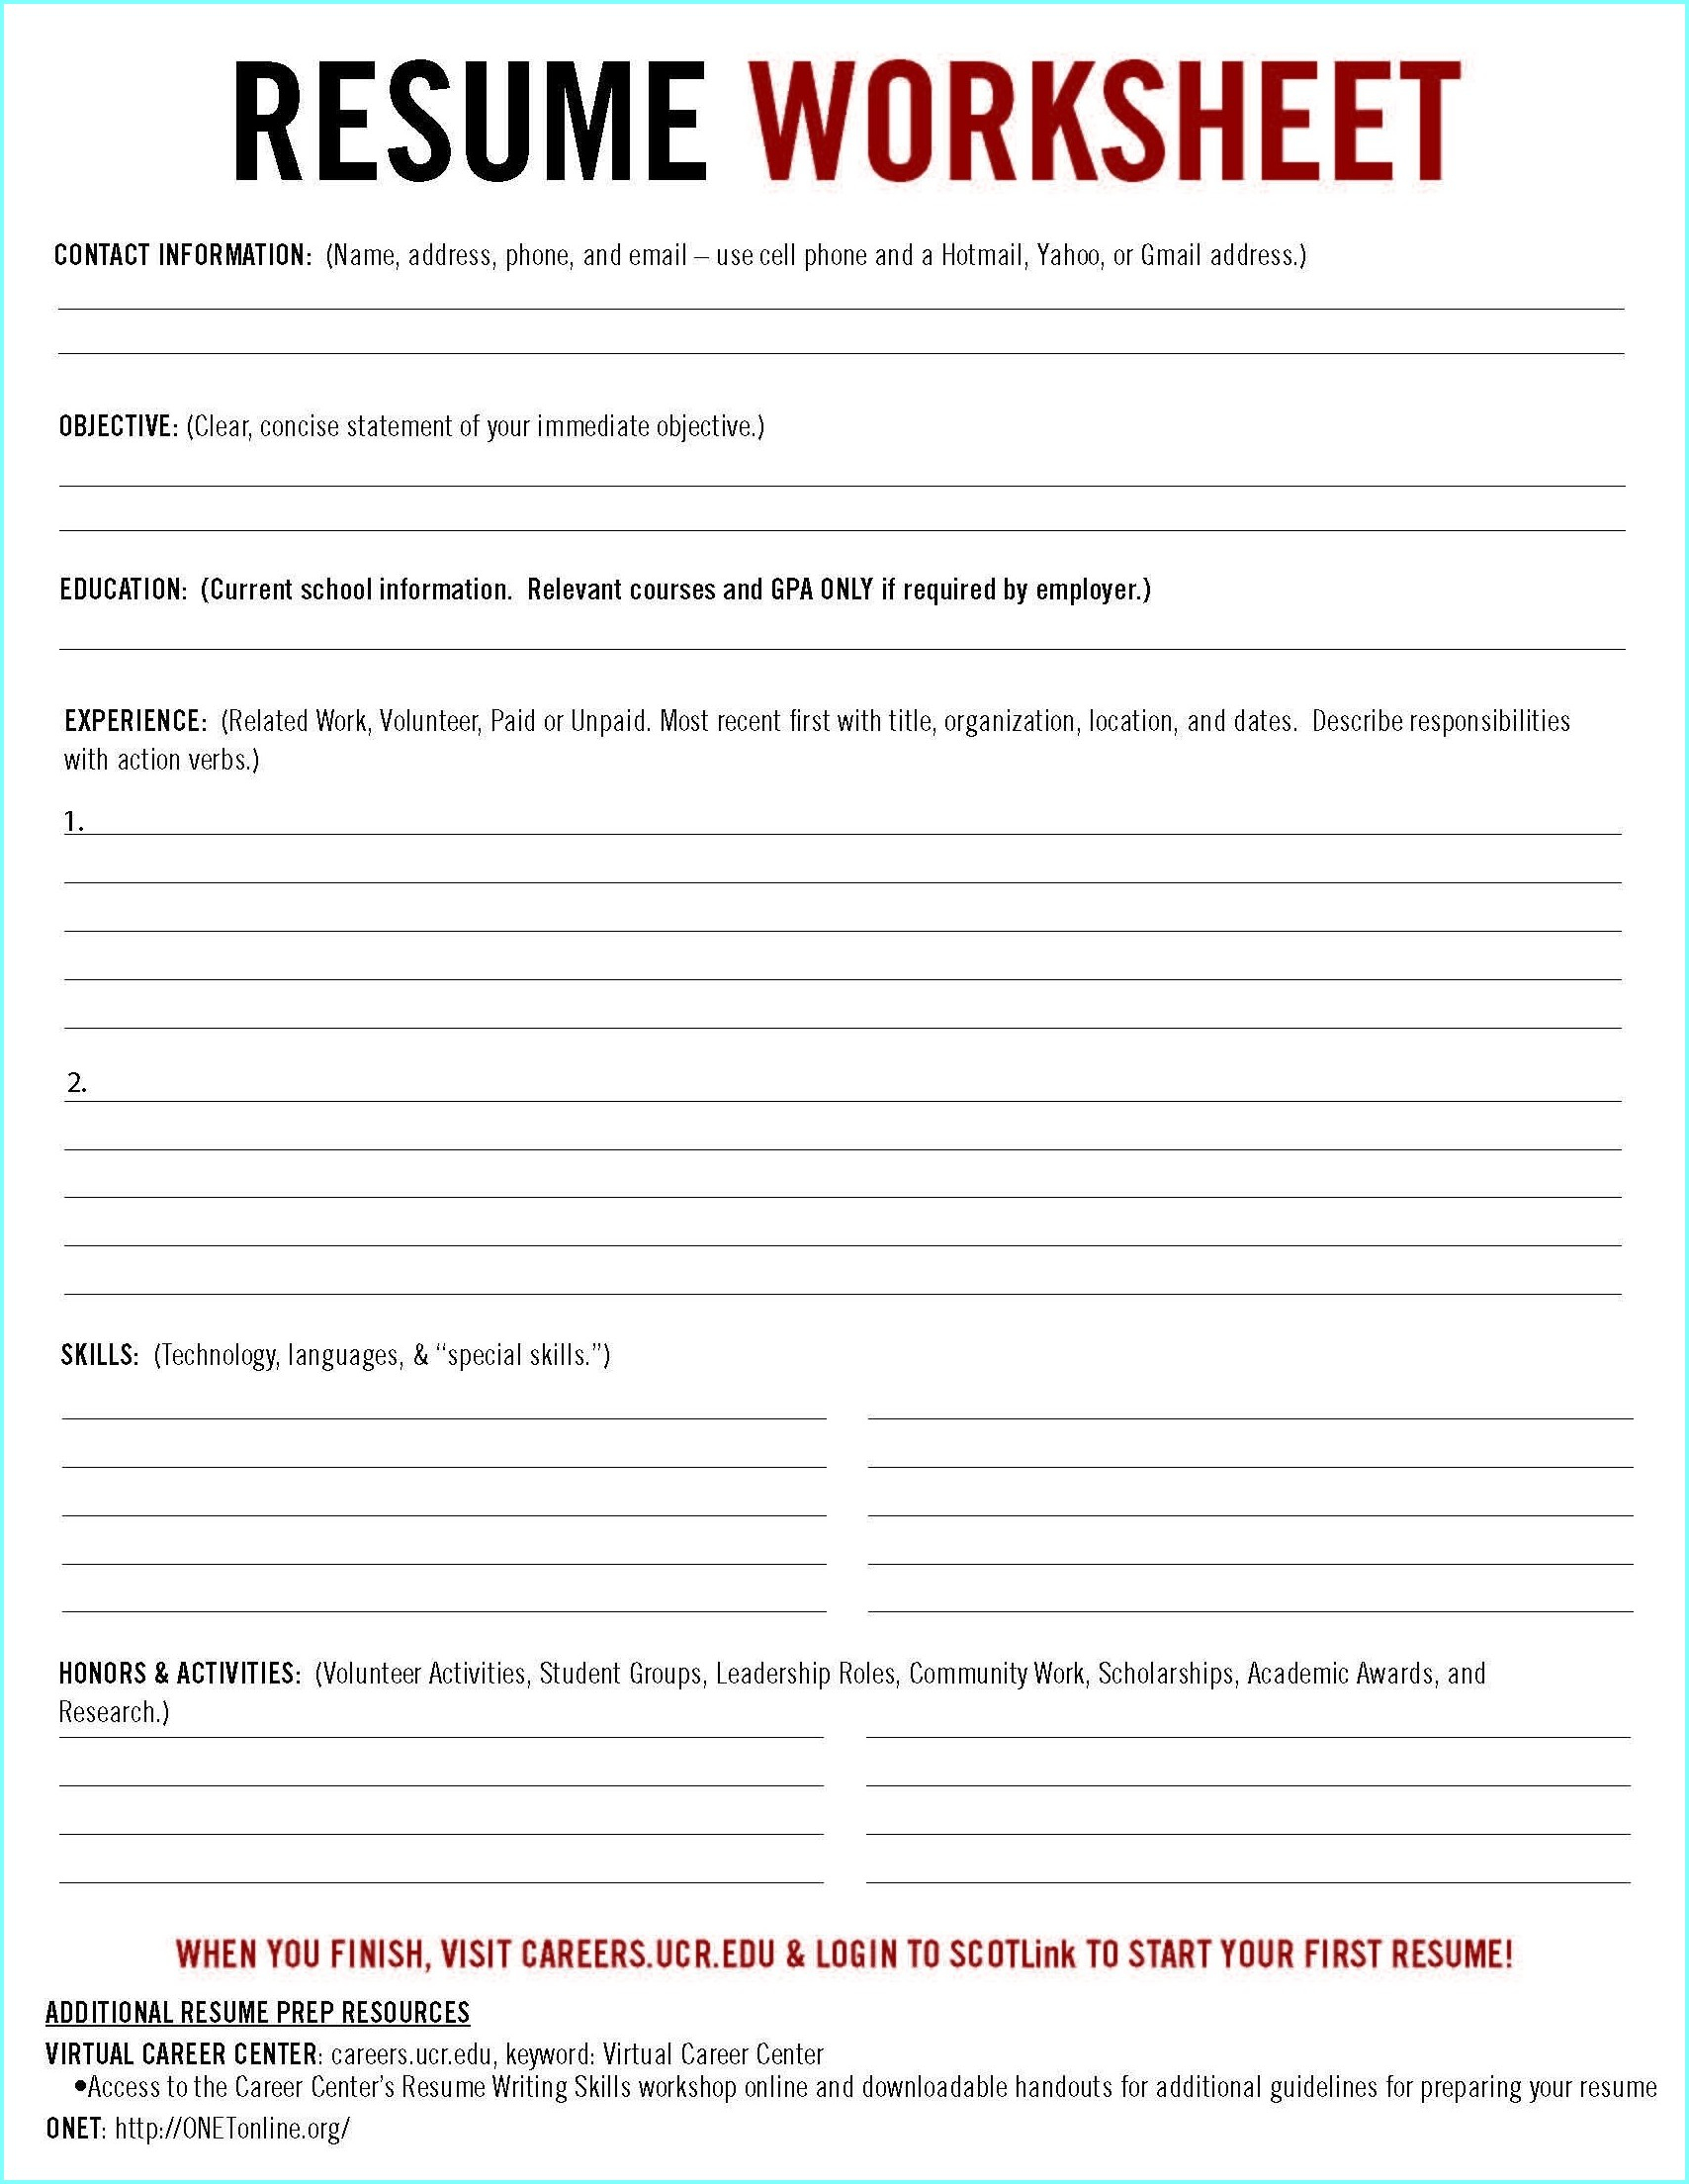 Free Printable Resume Worksheets - Resume : Resume Examples #gr3Ed6J42Z | Printable Resume Builder Worksheet